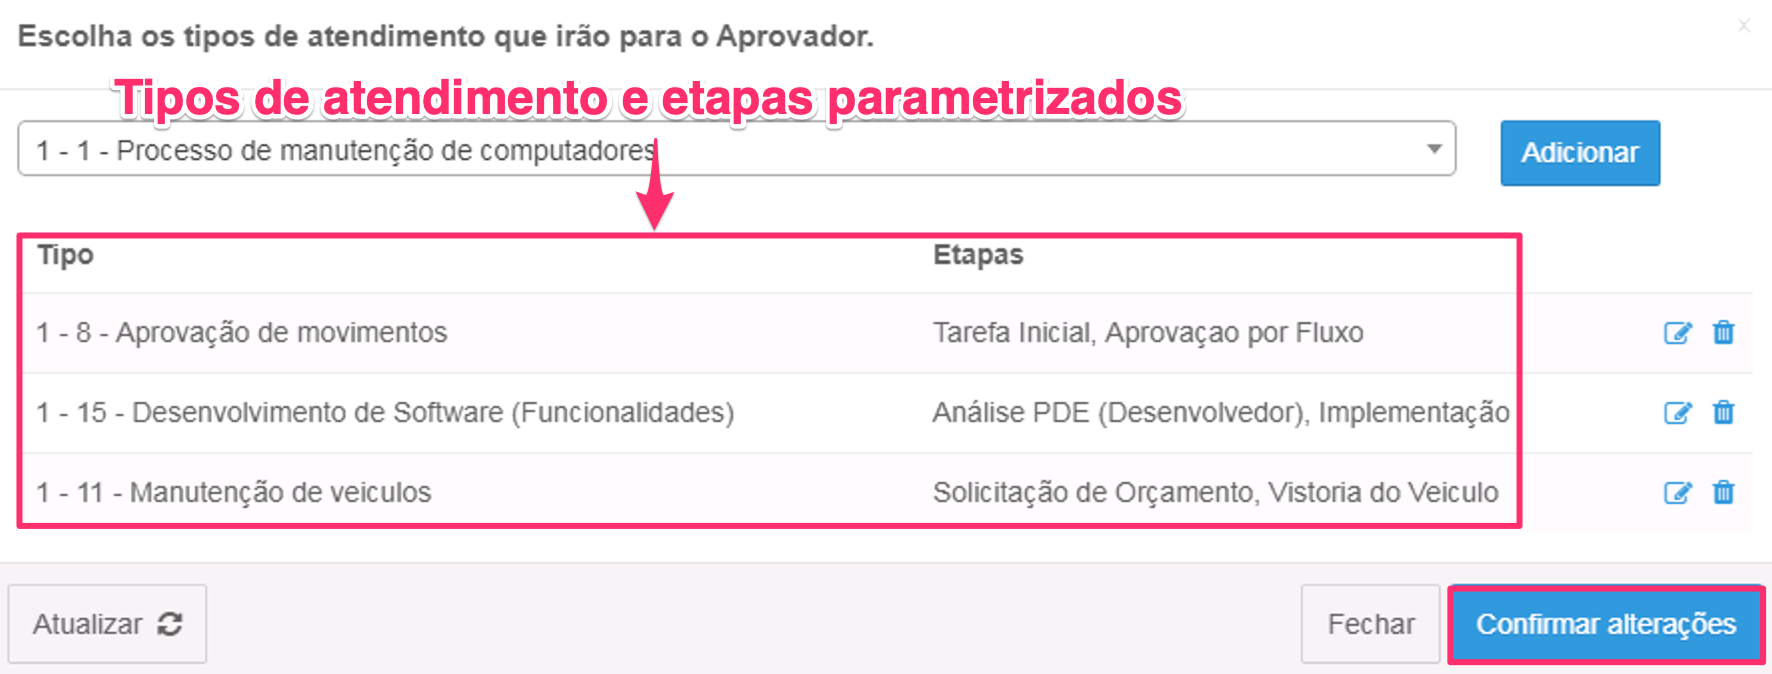 10_-_tipos_de_atendimento_e_etapas_parametrizados.png